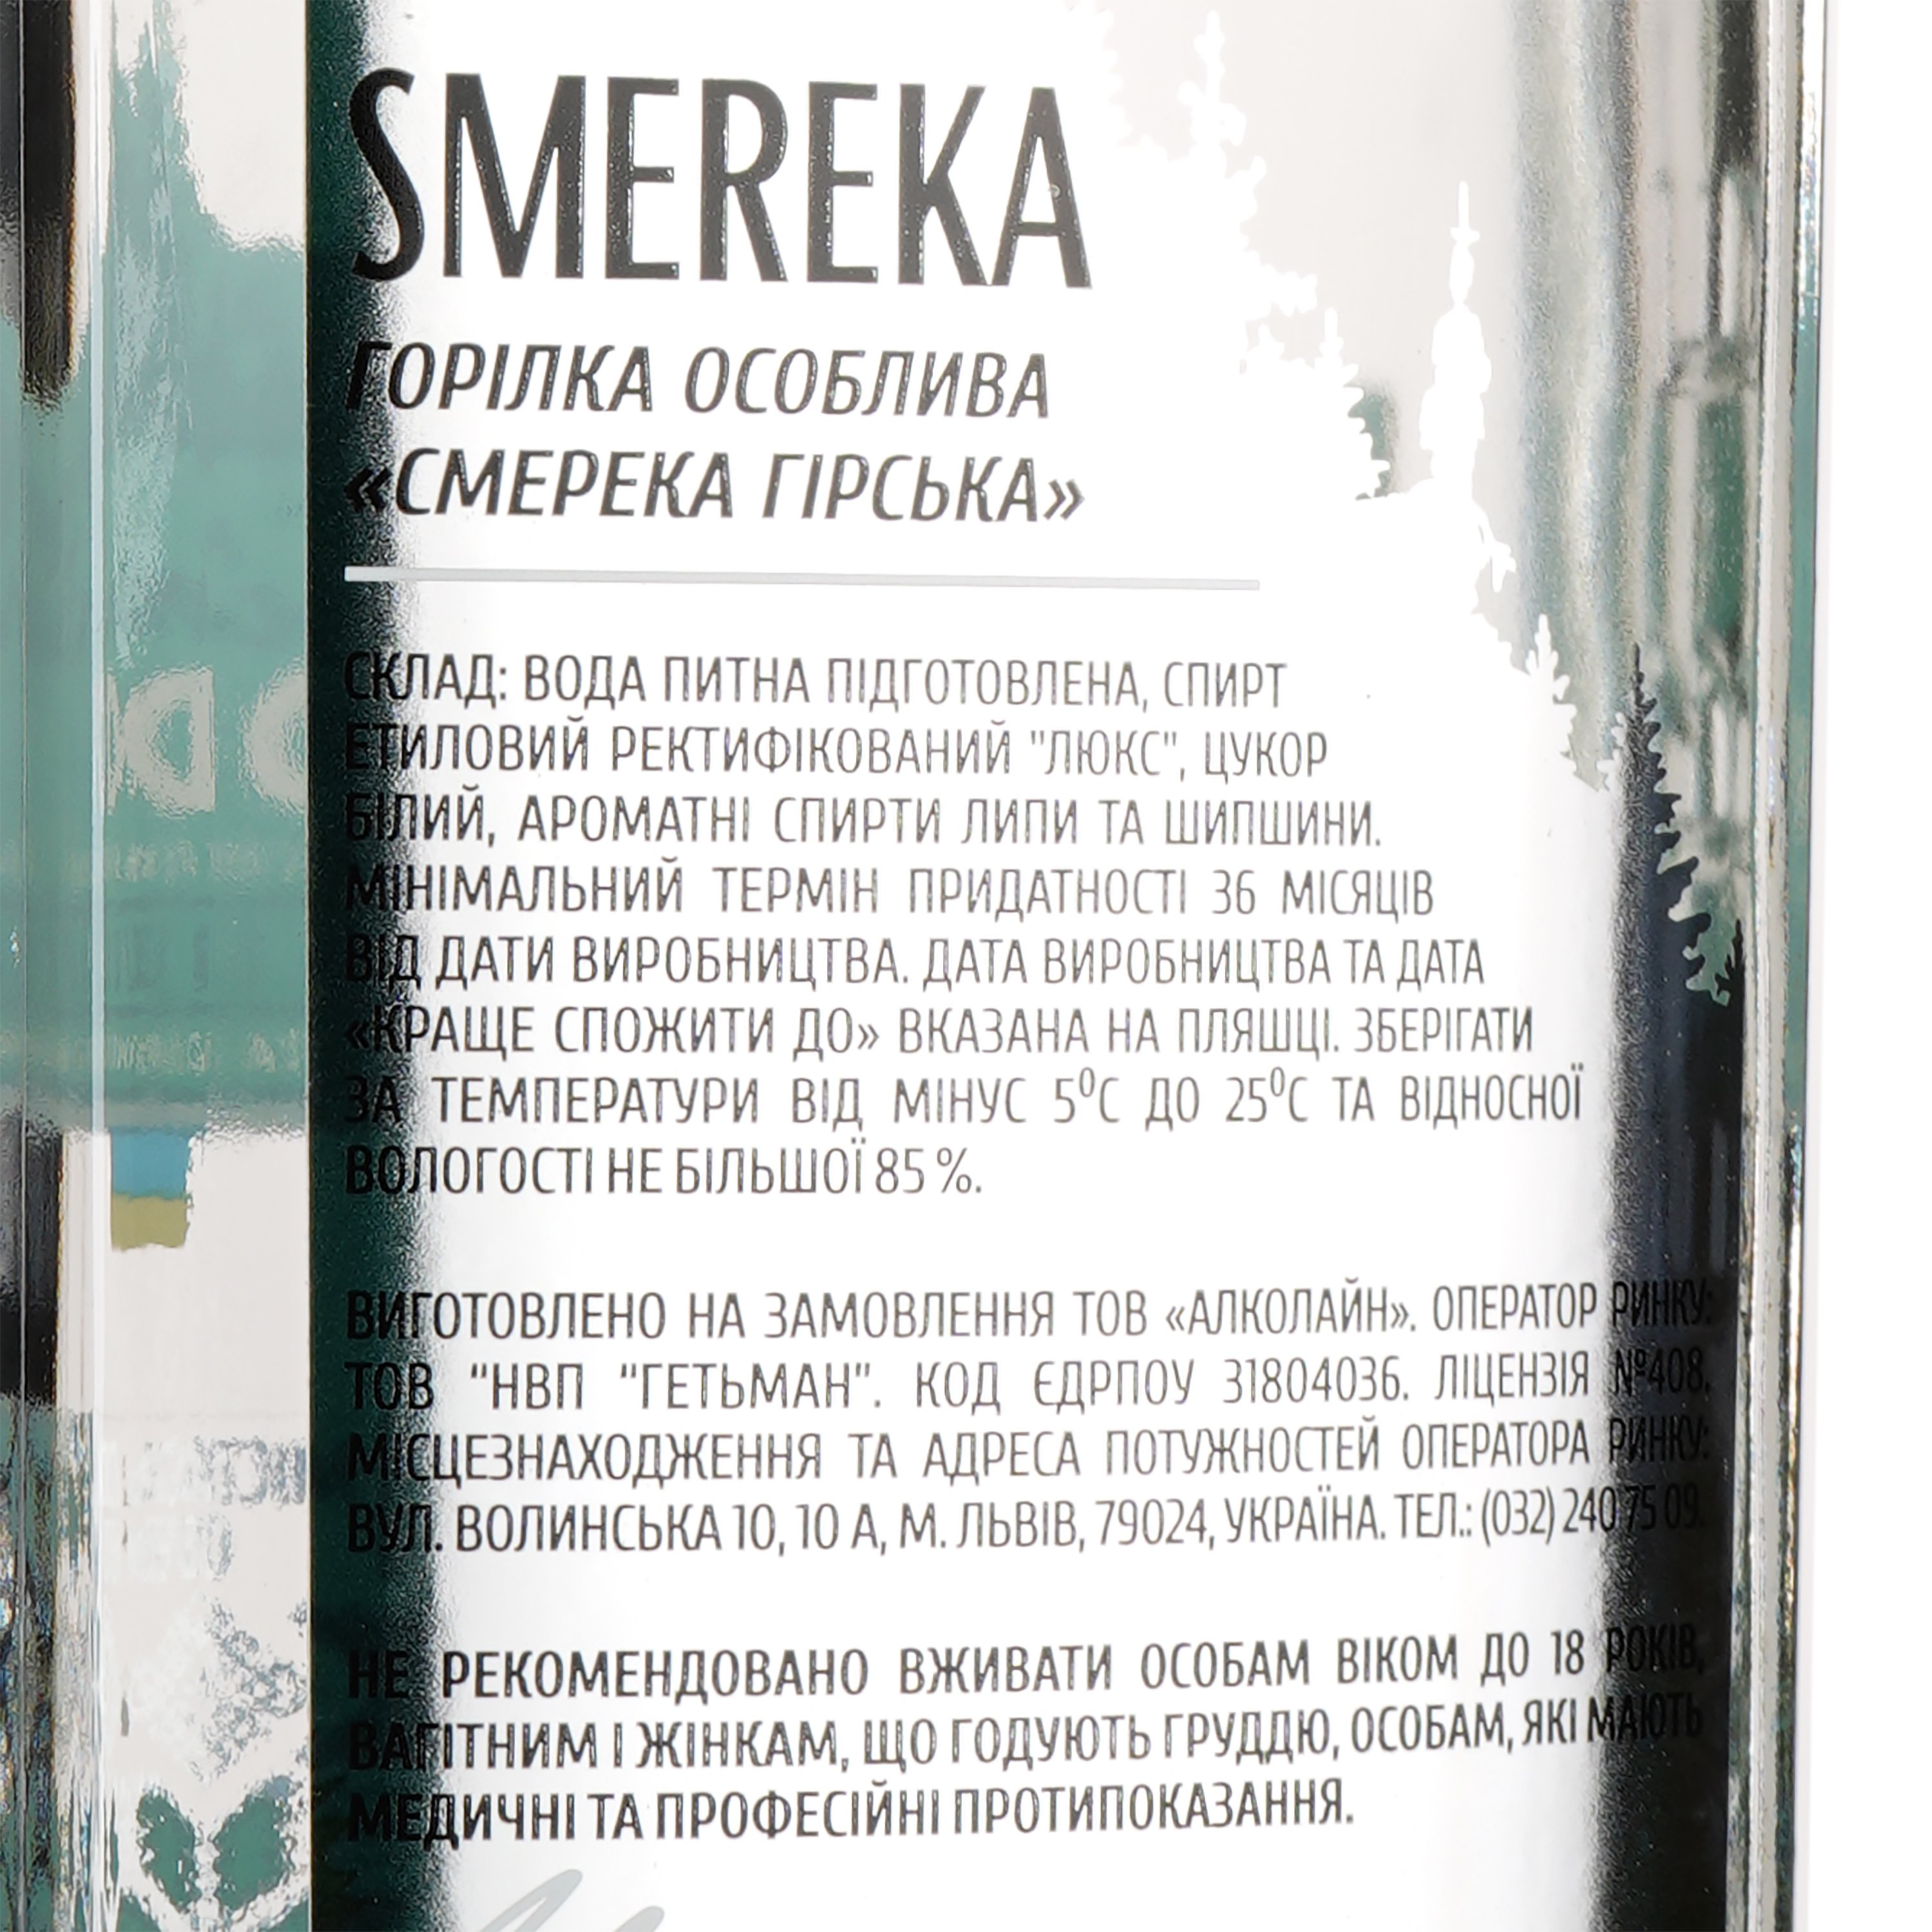 Горілка Smereka Гірська особлива, 40%, 0,5 л - фото 4